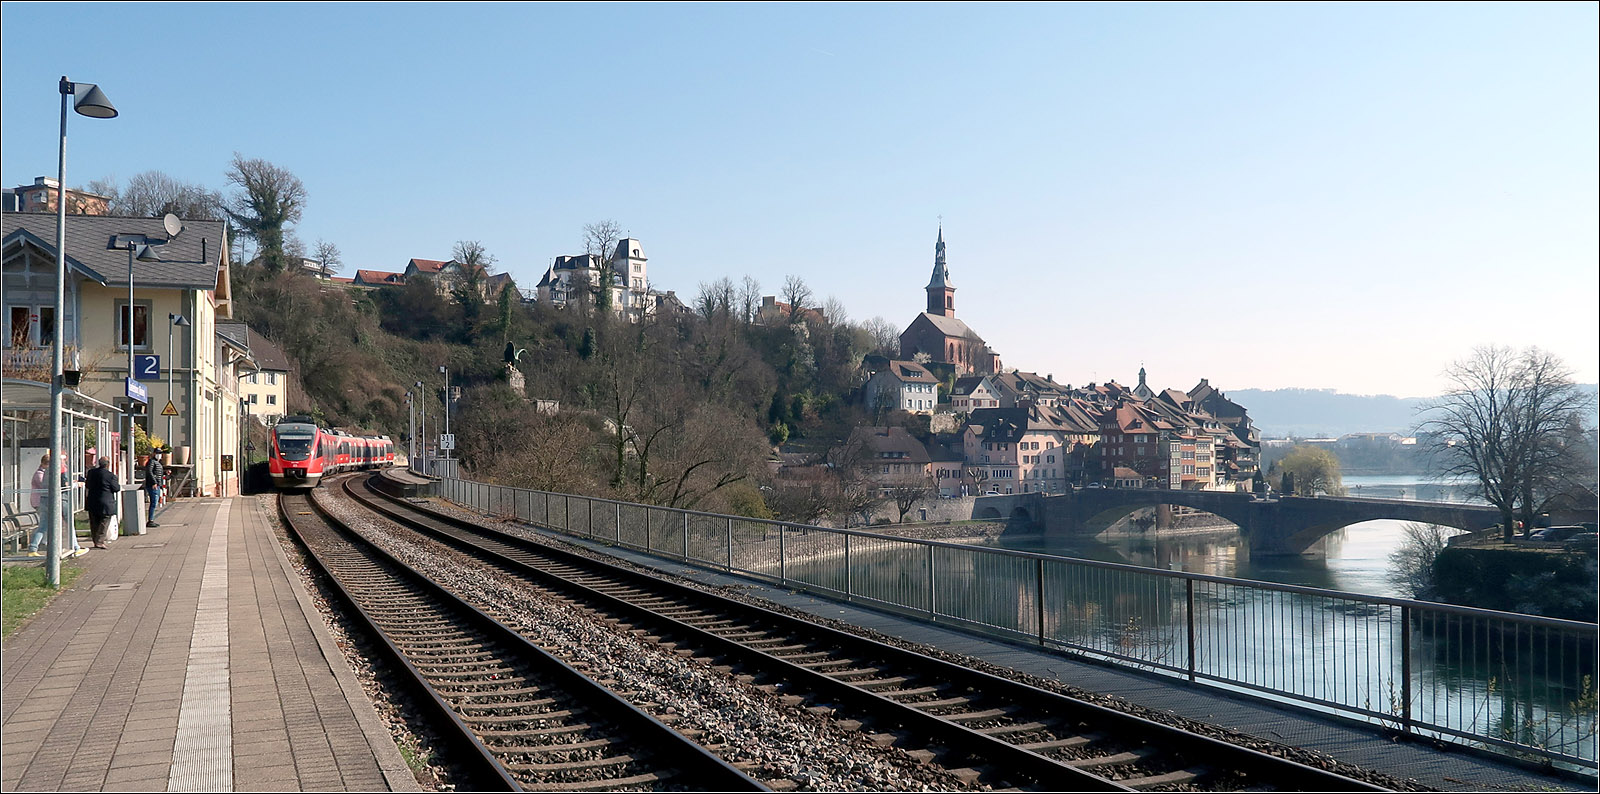 Bahnsteig mit Aussicht - 

Vom Bahnsteig des Bahnhofes Laufenburg (Baden) hat man einen schönen Blick auf die Altstadt, hier der deutsche Teil und den Rhein daneben.

Mit diesem Bild, das ich kürzlich schon gezeigt habe, möchte ich mal die größere Bilddarstellung ausprobieren. Ich hoffe die Qualität reicht aus. 

24.03.2022 (M)